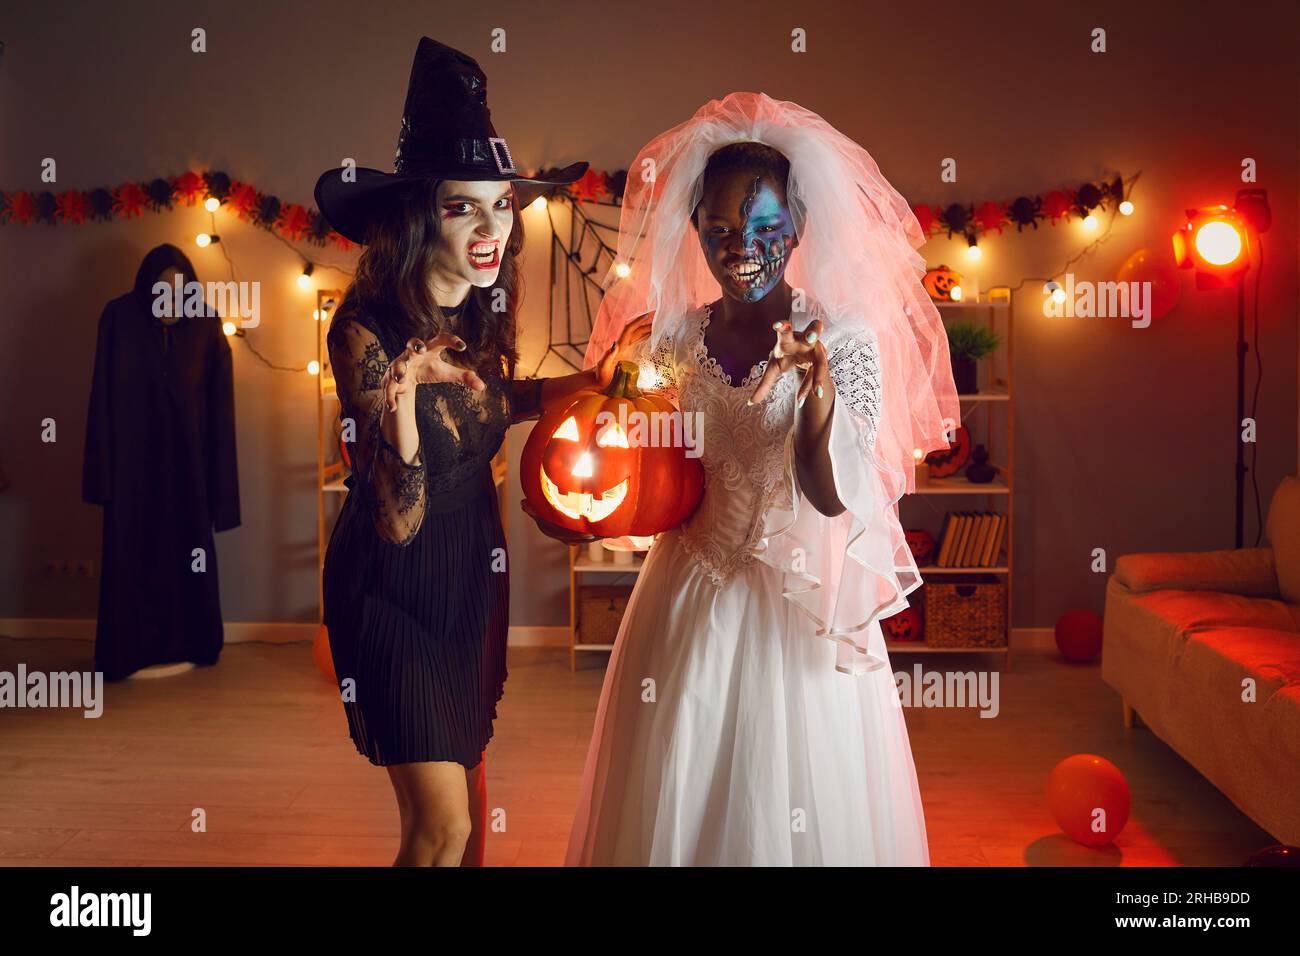 Porträt gruseliger Frauen in Kostümen auf Halloween-Feierlichkeiten Stockfoto